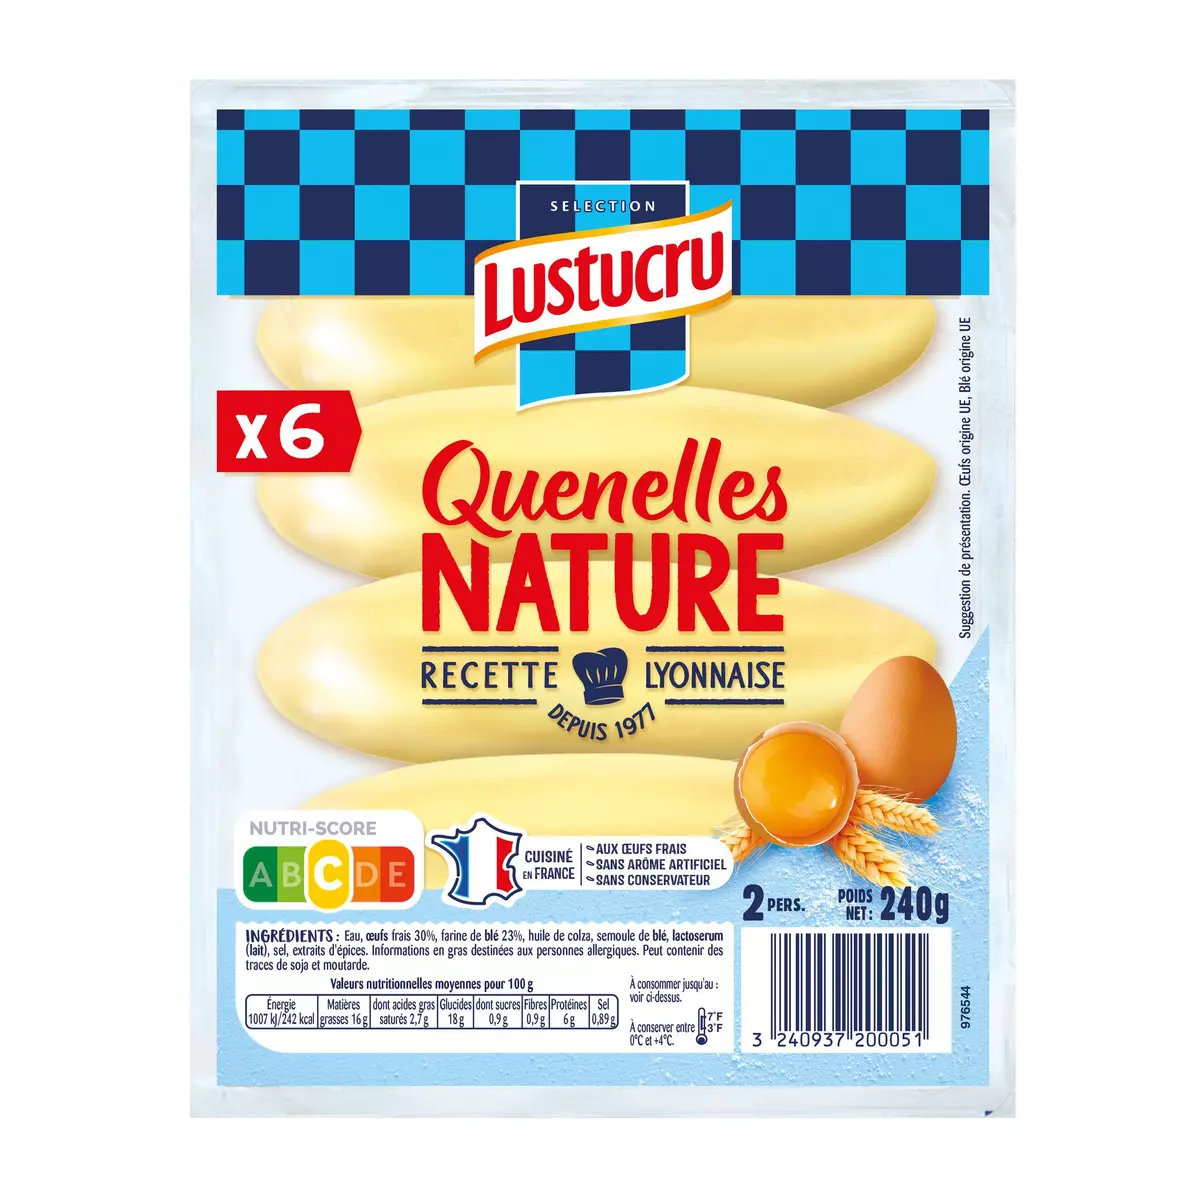 LUSTUCRU Quenelles nature sachet de 6 2 portions 240g